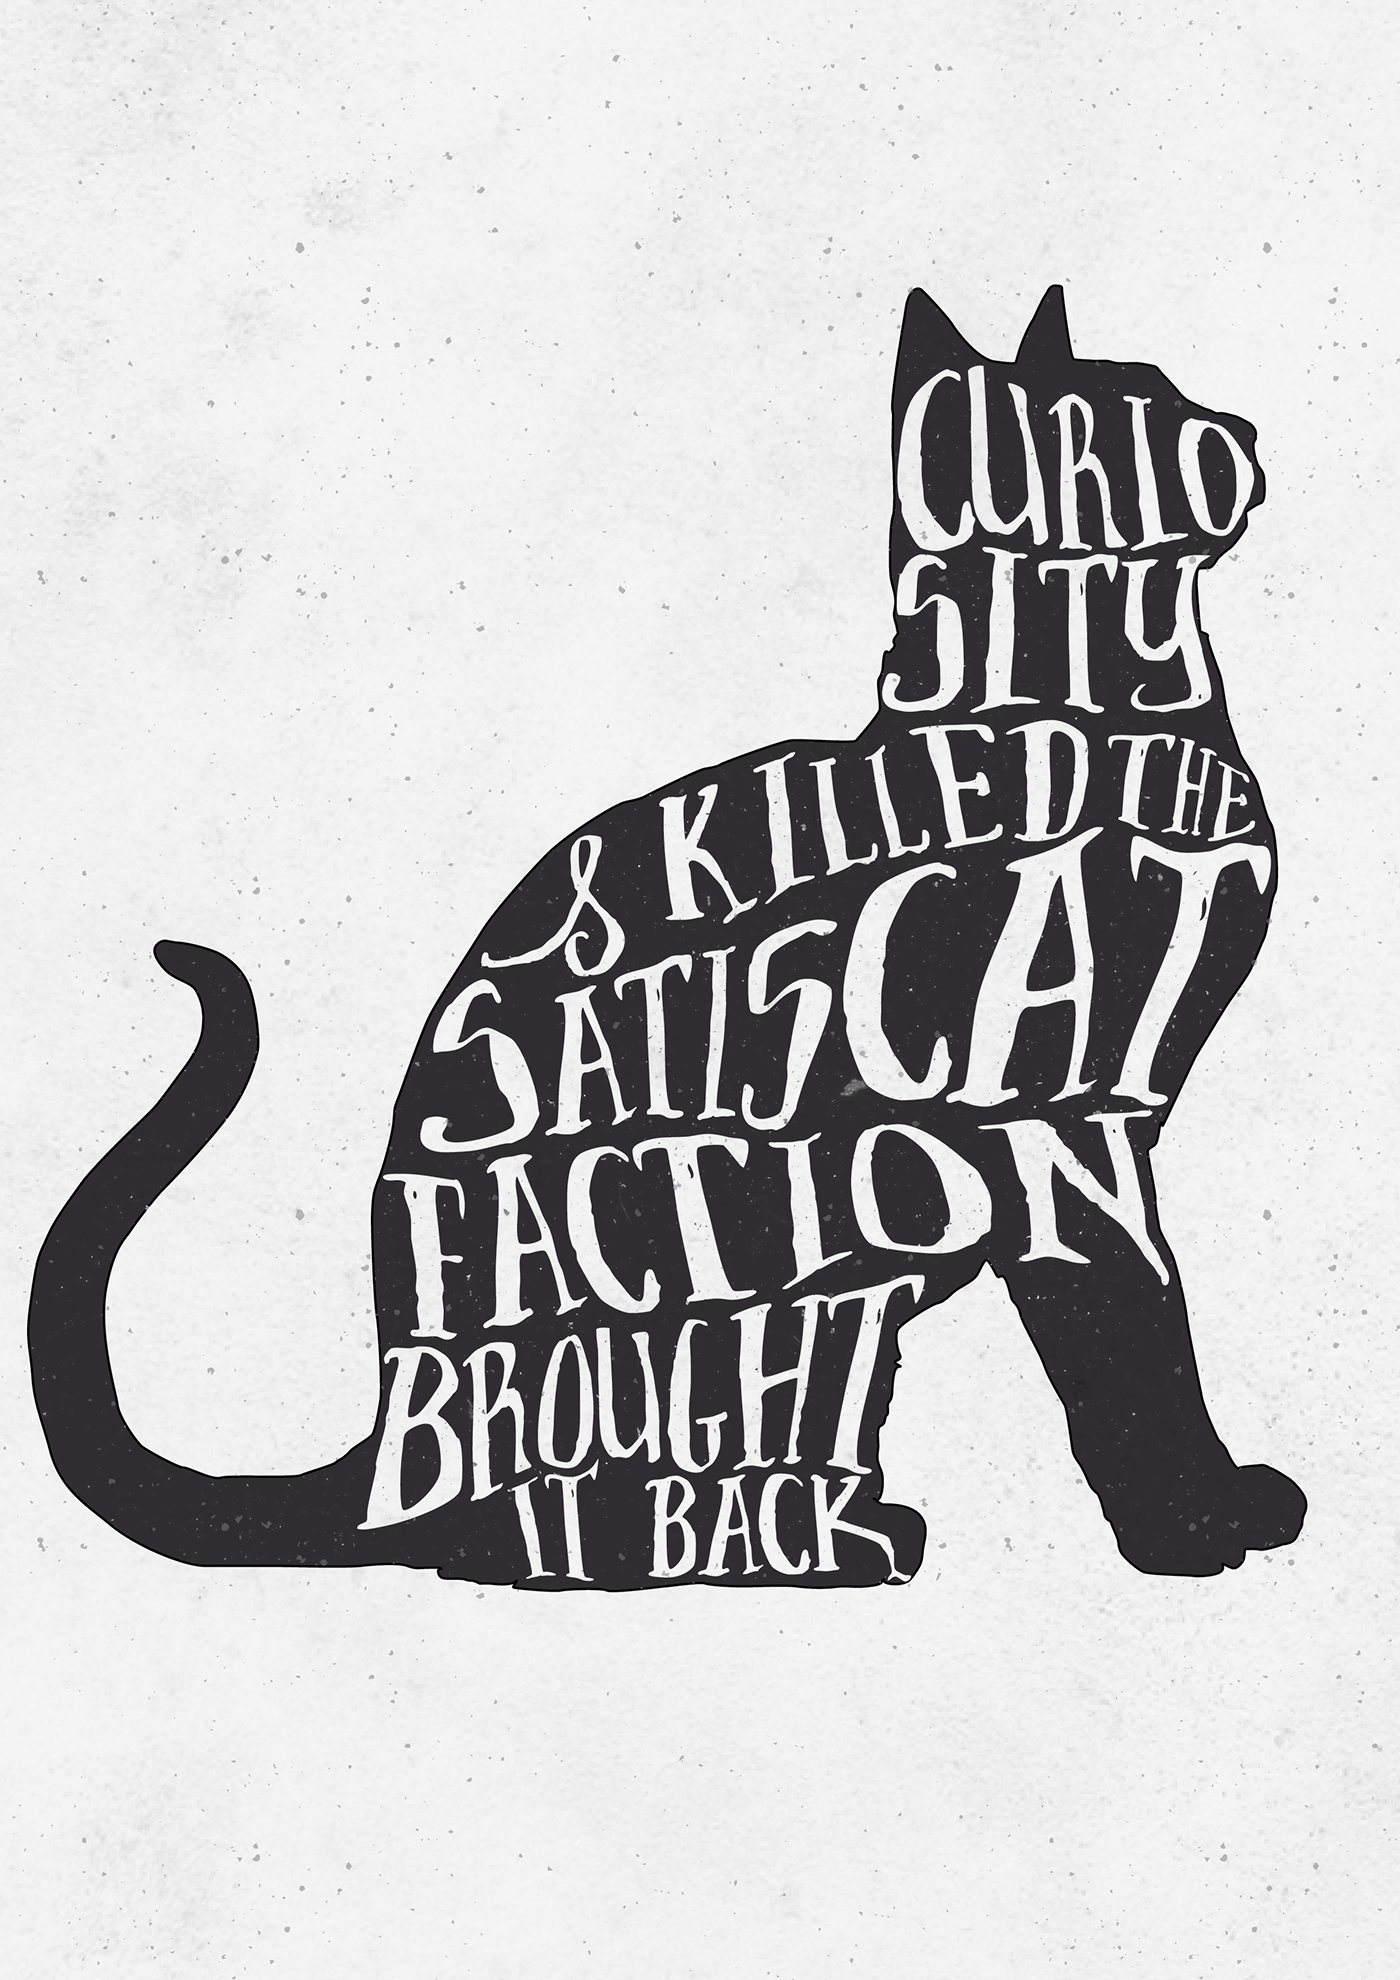 Curiosity killed the. Curiosity Killed the Cat. Kill the Cat Постер. Пословица Curiosity Killed a Cat.. Curiosity Killed the Cat русский эквивалент.